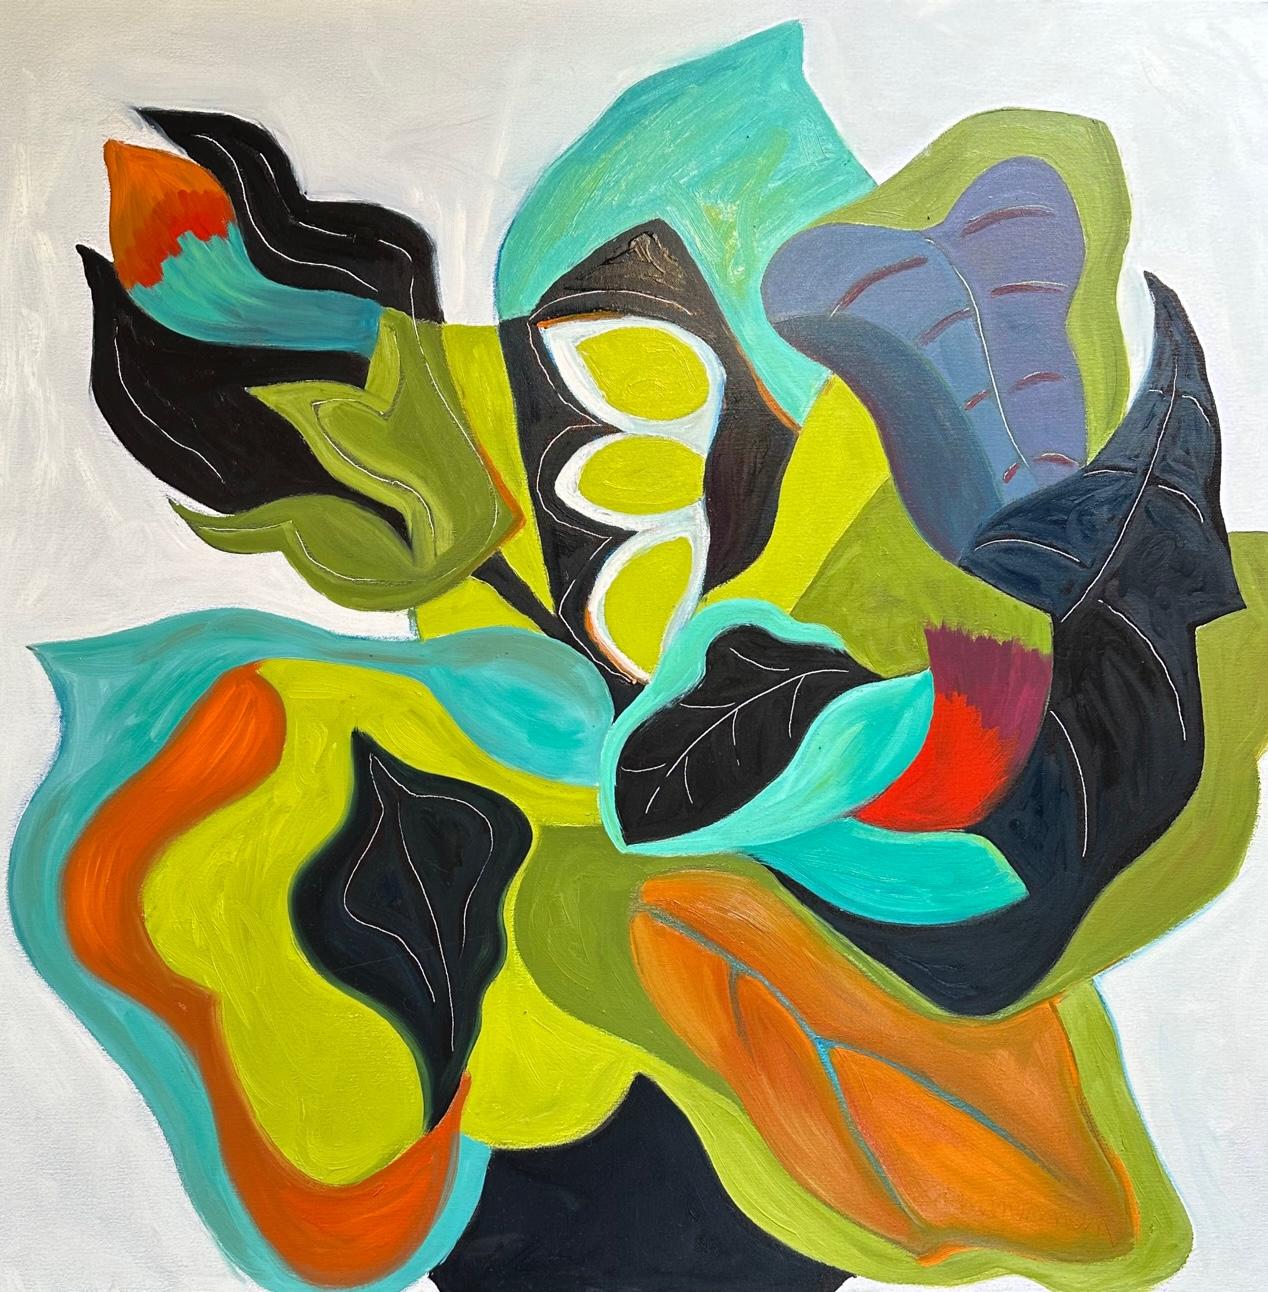 Dieses Meisterwerk ist in der Zimmerman Gallery, Carmel CA, ausgestellt.


Marc Zimmerman schafft verspielte Gemälde, ob tiefgründiger, geheimnisvoller Dschungel oder herrlich skurrile Blumen. Seine Farbpalette erkundet verschiedene Harmonien und